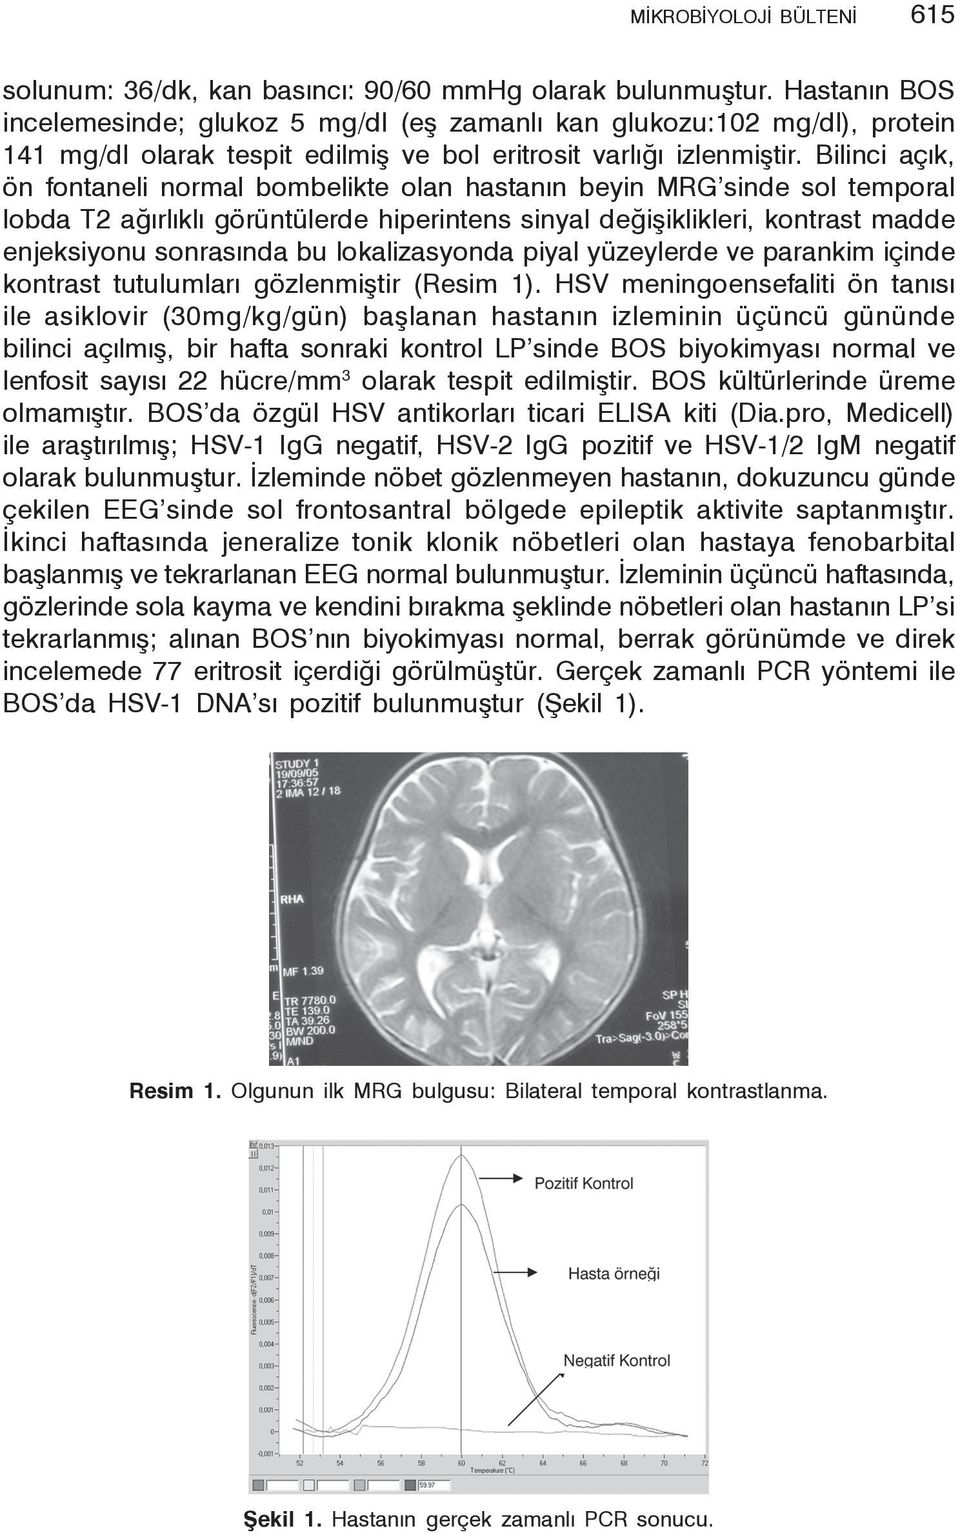 Bilinci açık, ön fontaneli normal bombelikte olan hastanın beyin MRG sinde sol temporal lobda T2 ağırlıklı görüntülerde hiperintens sinyal değişiklikleri, kontrast madde enjeksiyonu sonrasında bu